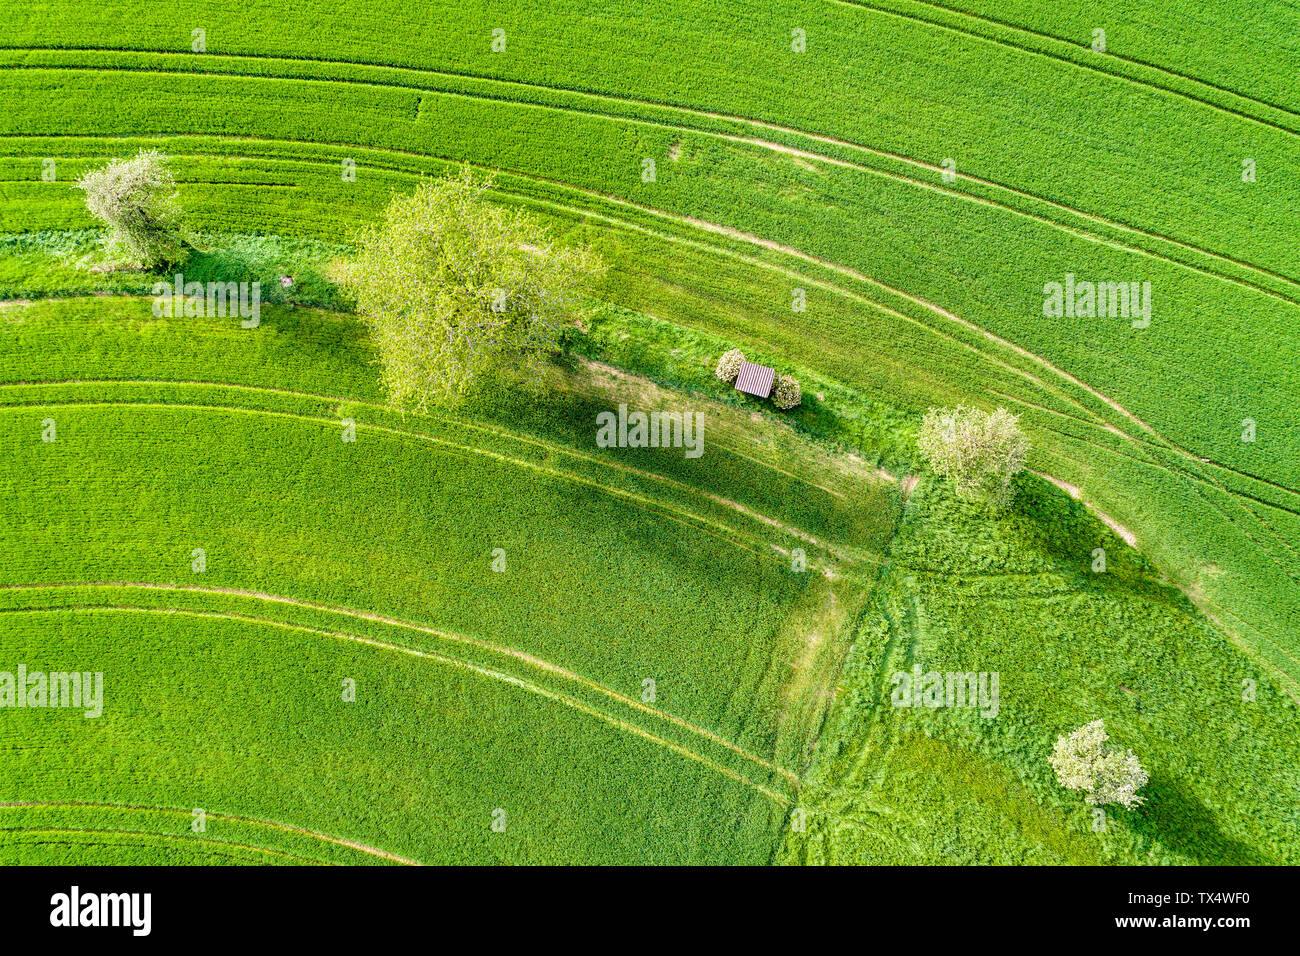 Allemagne, Bade-Wurtemberg, Rems-Murr-Kreis, vue aérienne du domaine vert au printemps Banque D'Images